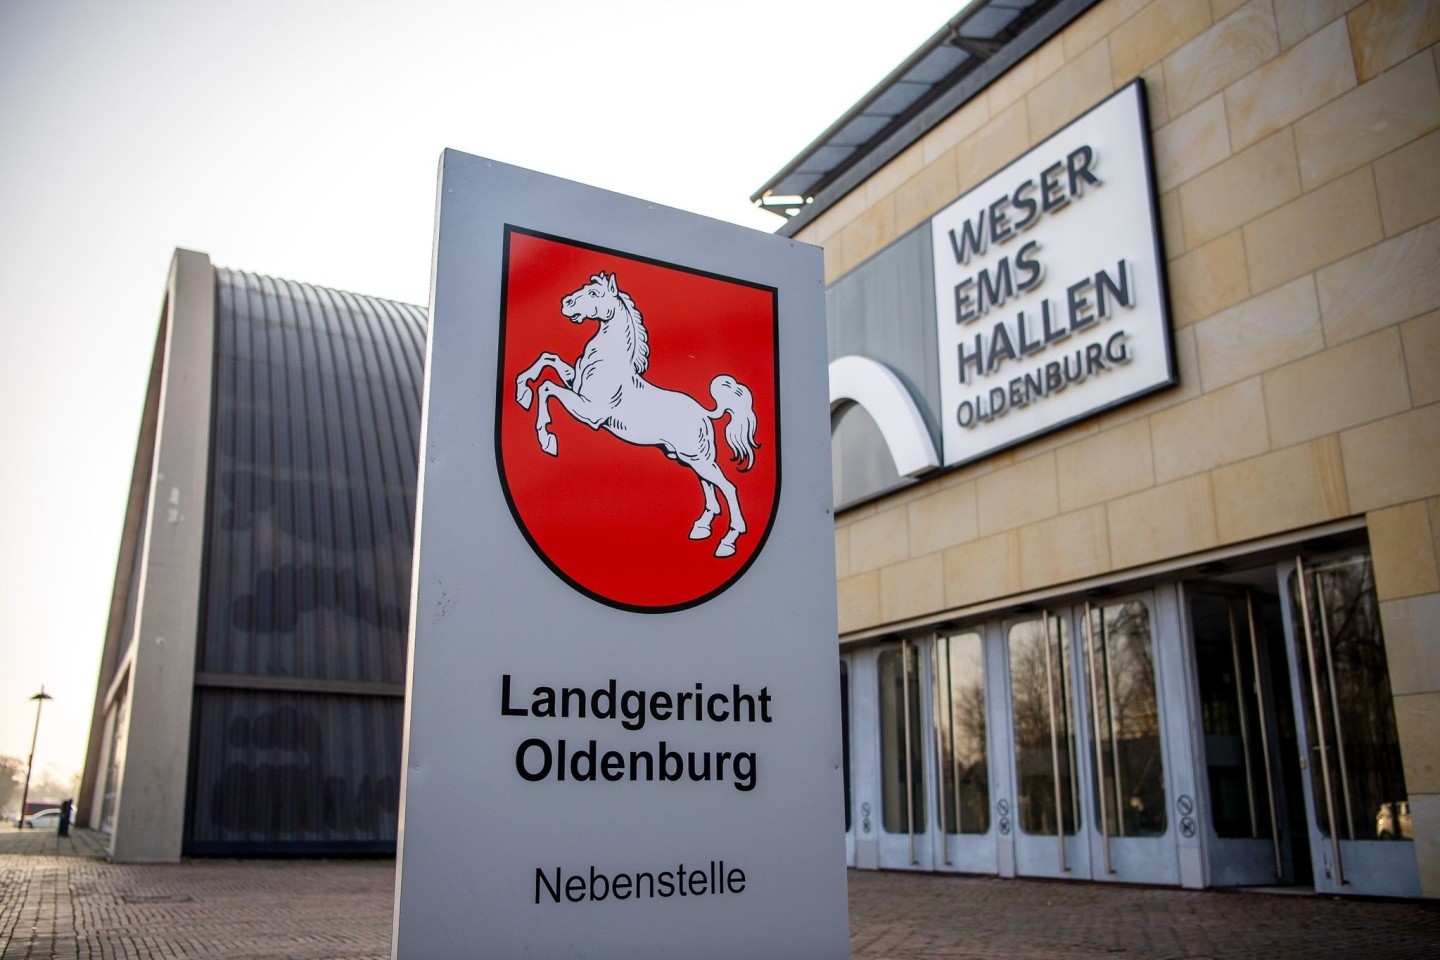 In den Weser-Ems-Hallen in Oldenburg findet aus Platzgründen der Prozess gegen frühere Vorgesetzte des ehemaligen Krankenpflegers Högel statt.